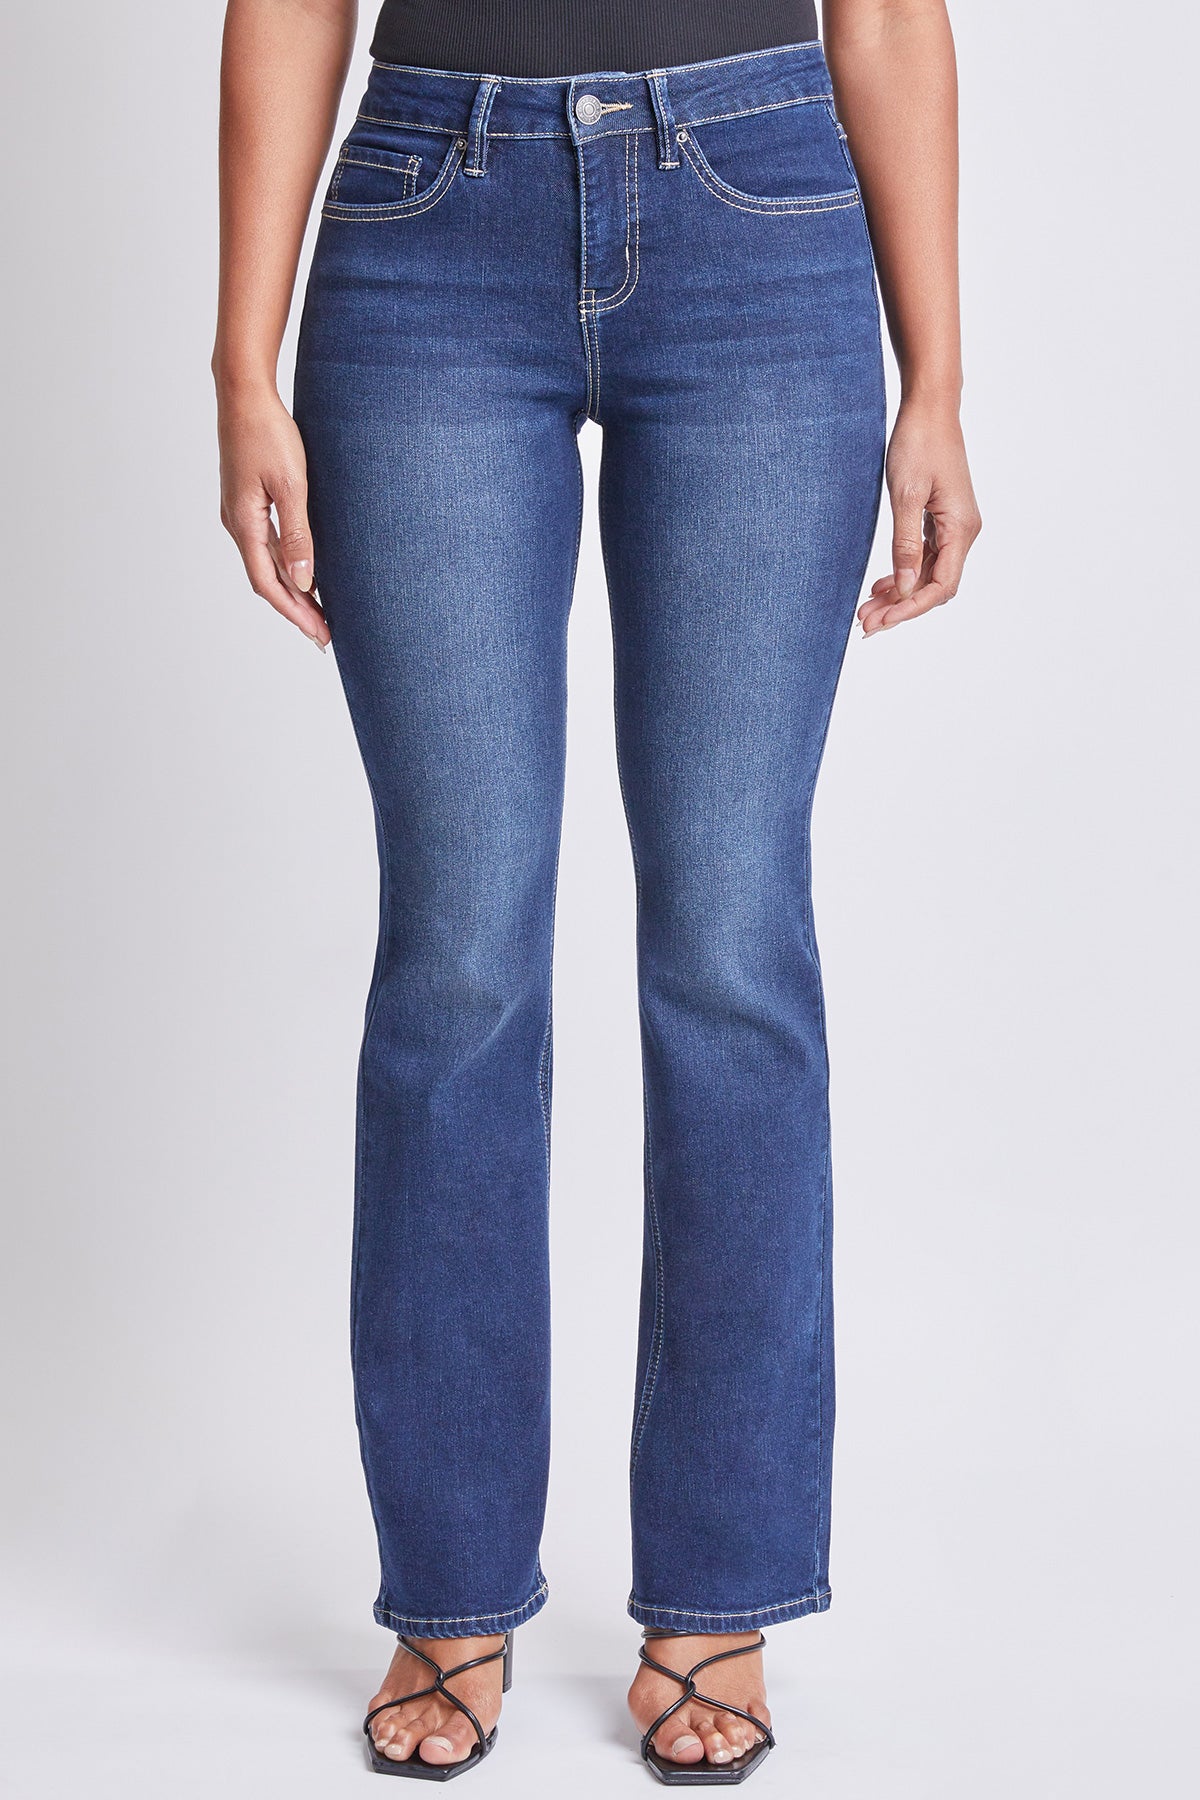 Suko Jeans Straight Leg Women's 6 Blue Low Rise Cotton Blend Flap Back  Pockets